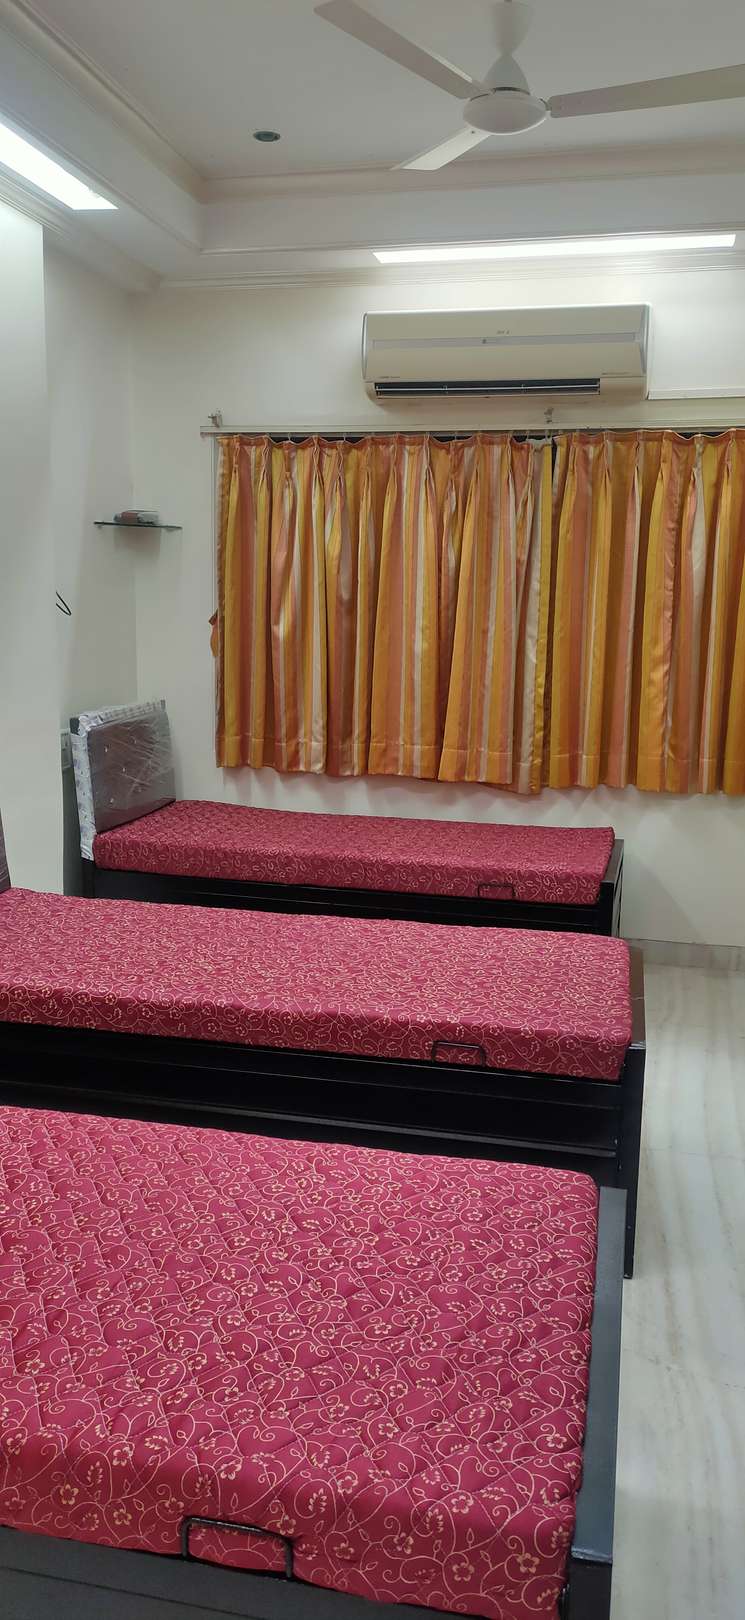 1 Bedroom 650 Sq.Ft. Apartment in Wadala Mumbai